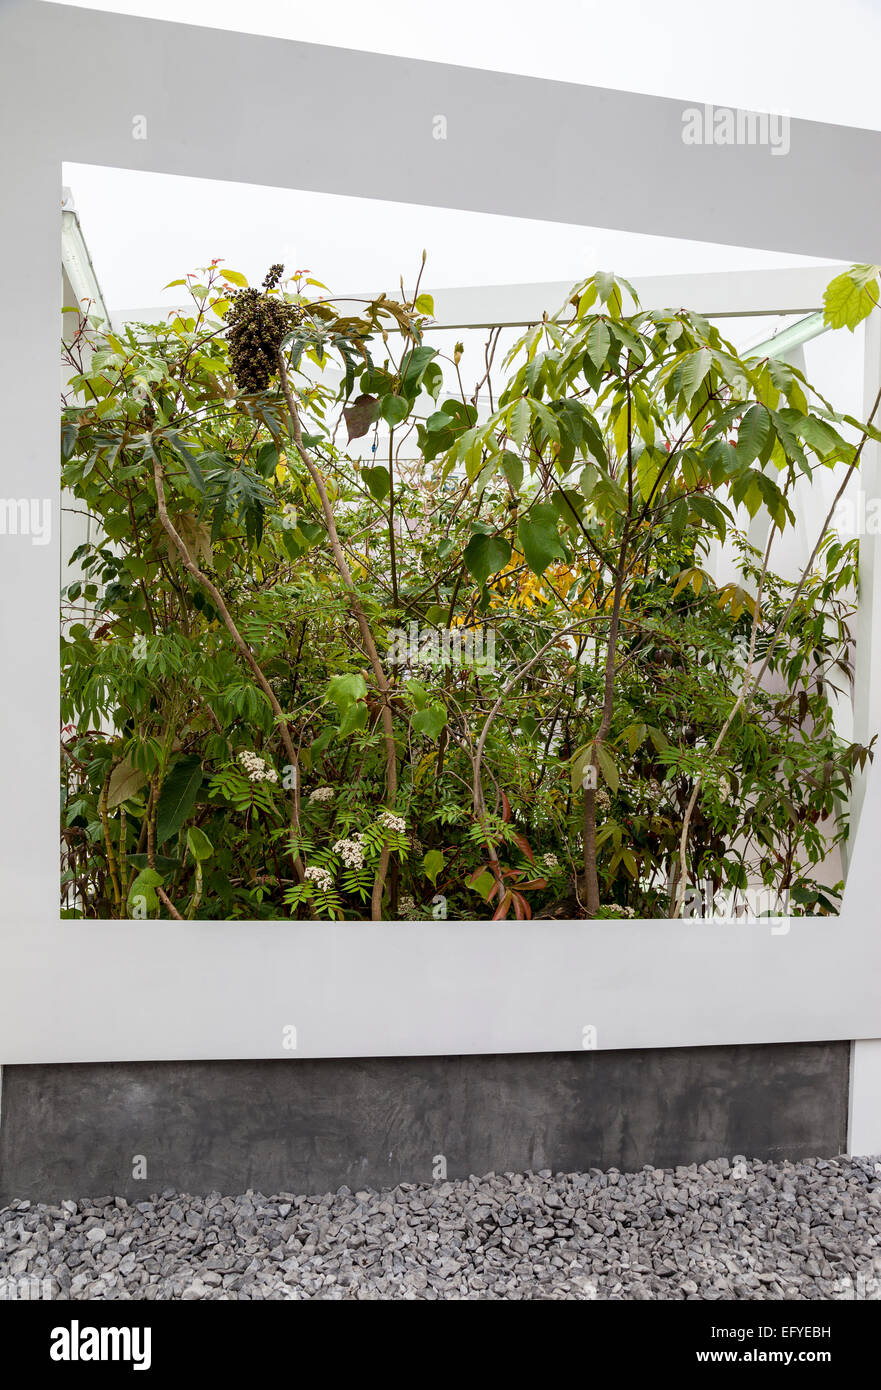 Gerahmte Whitebox gefüllt mit exotischen Pflanzen - Chelsea Flower Show Garten, Design: Sophie Walker Stockfoto